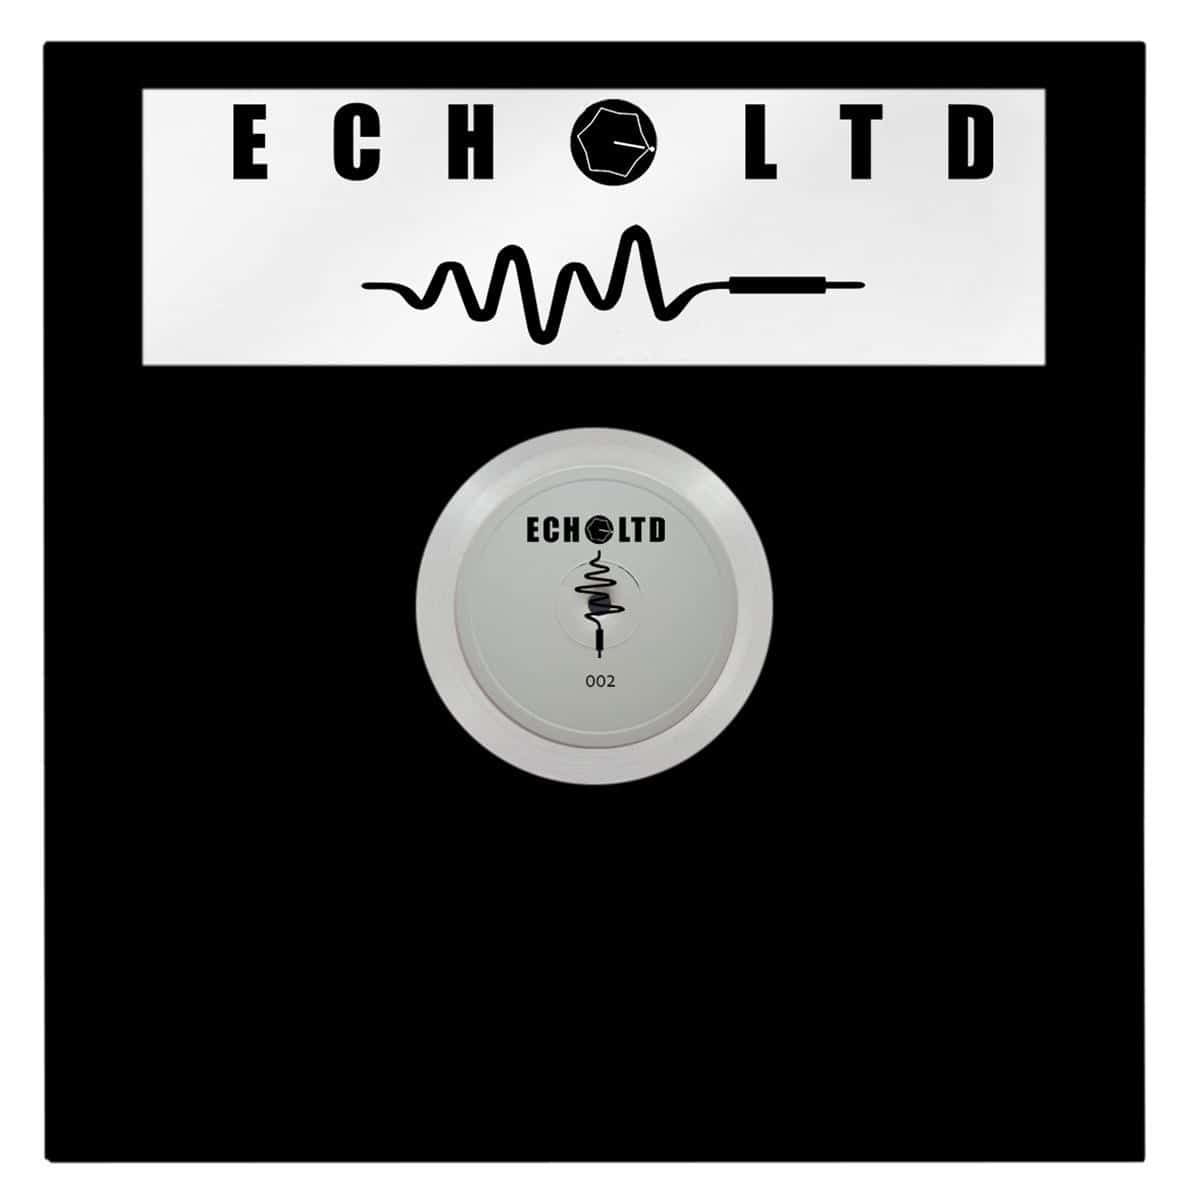 Unknown - Echo LTD 002 - ECHOLTD002 - ECHO LTD